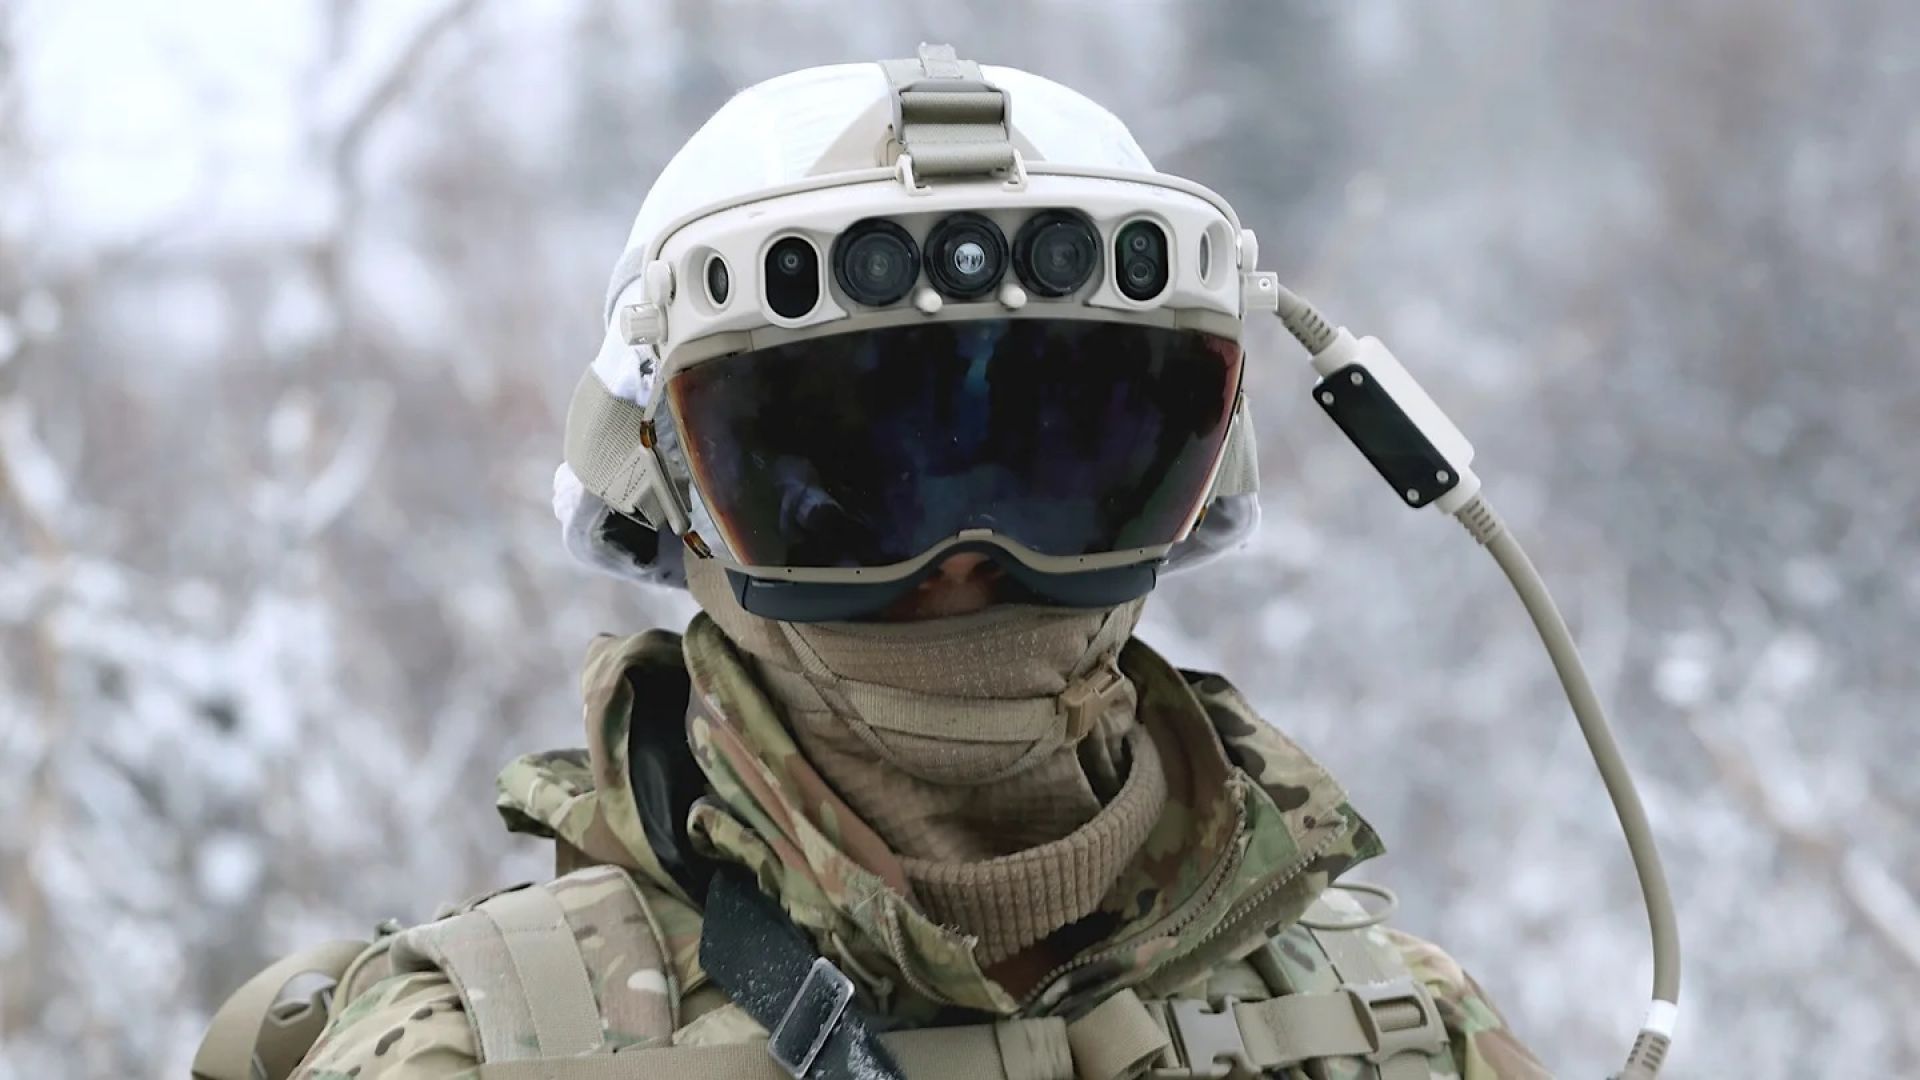 Пентагонът иска шлемове с добавена реалност